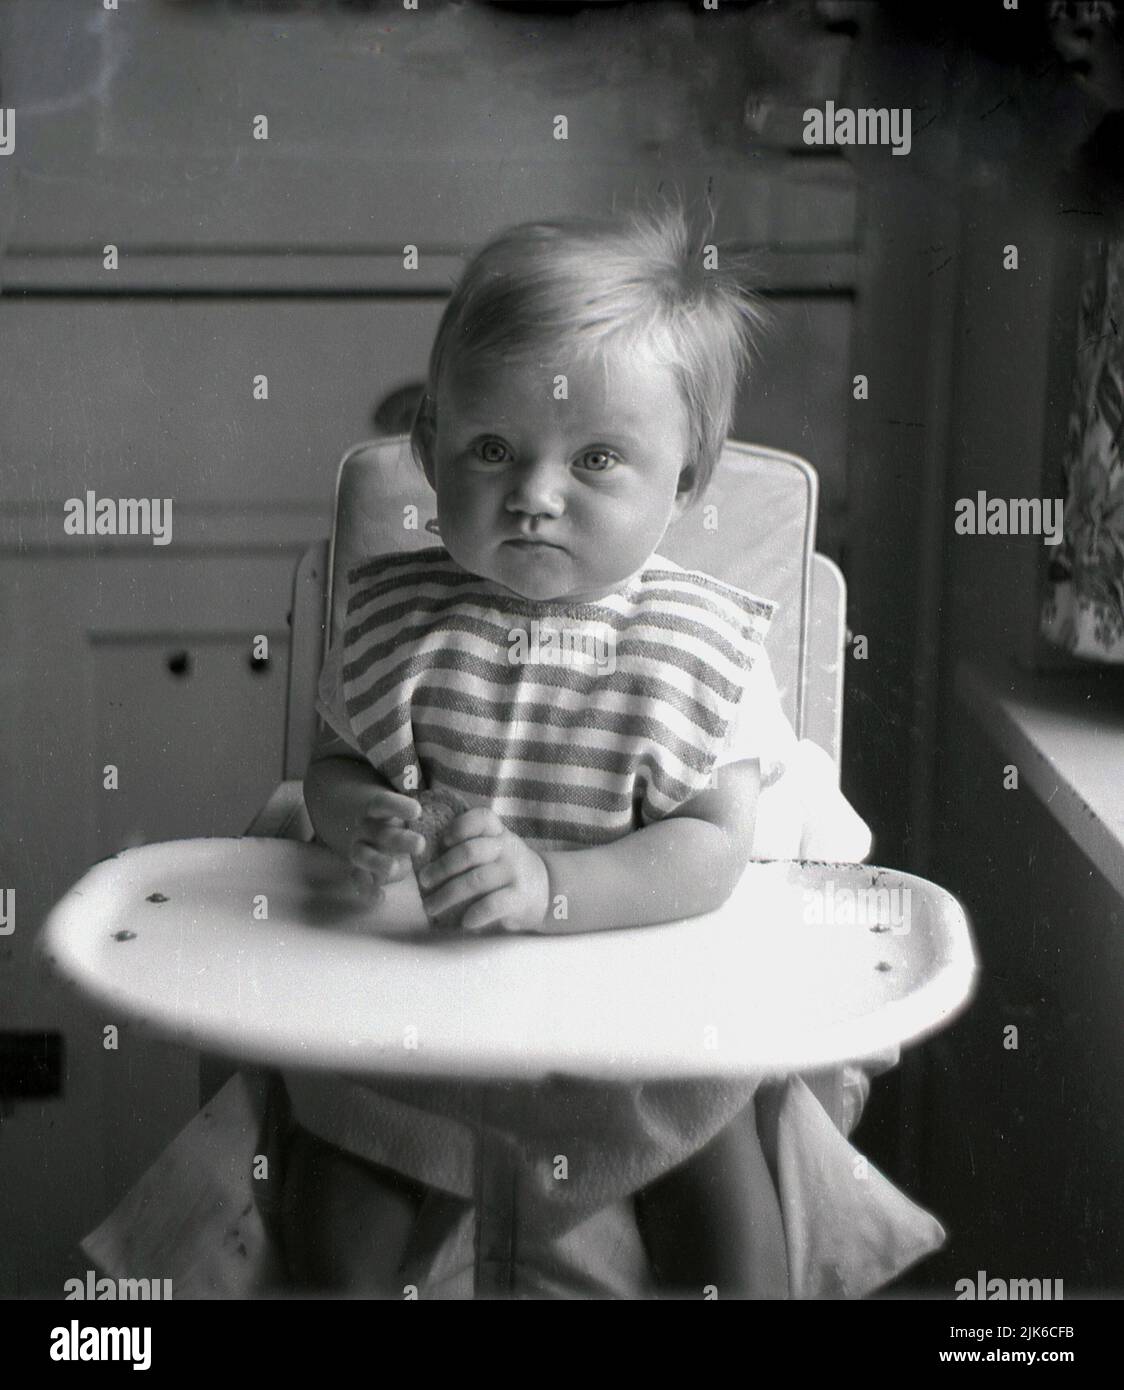 1960s, histórico, niño sentado en una silla alta, con una bandeja de metal esmaltado, sosteniendo una galleta, Inglaterra, REINO UNIDO. Foto de stock